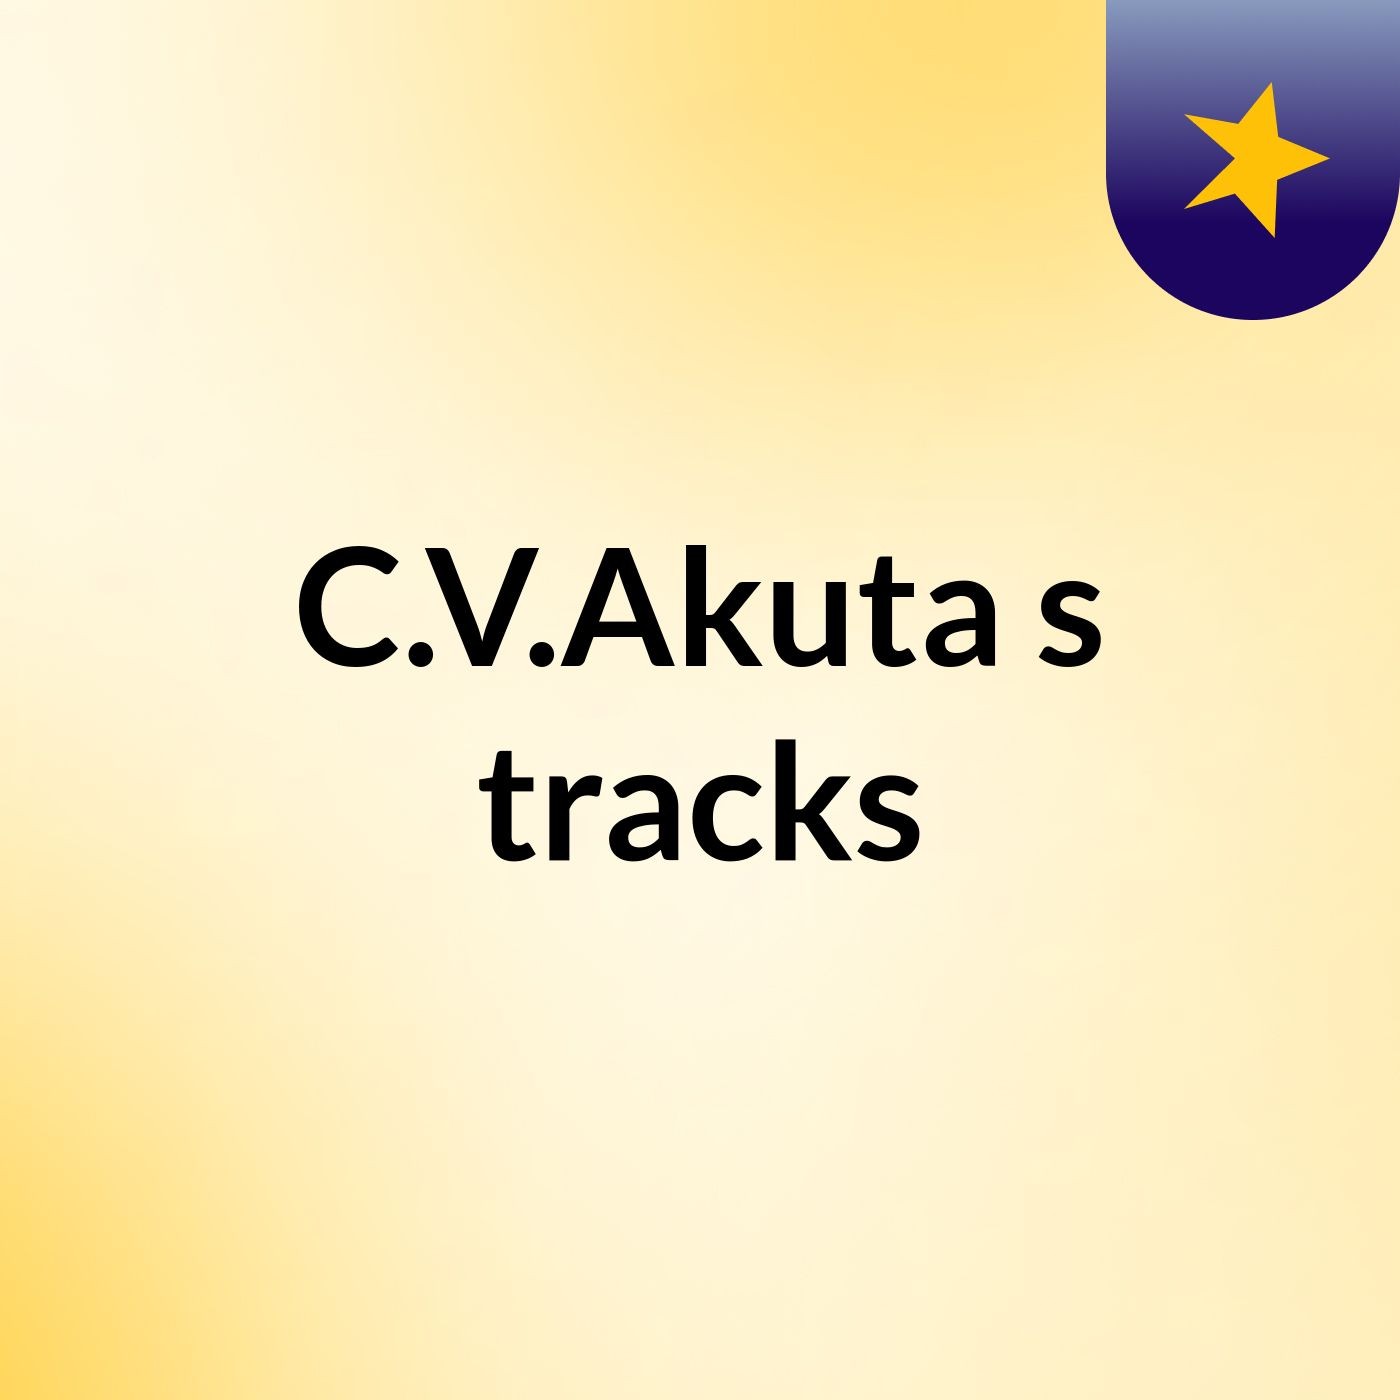 C.V.Akuta's tracks